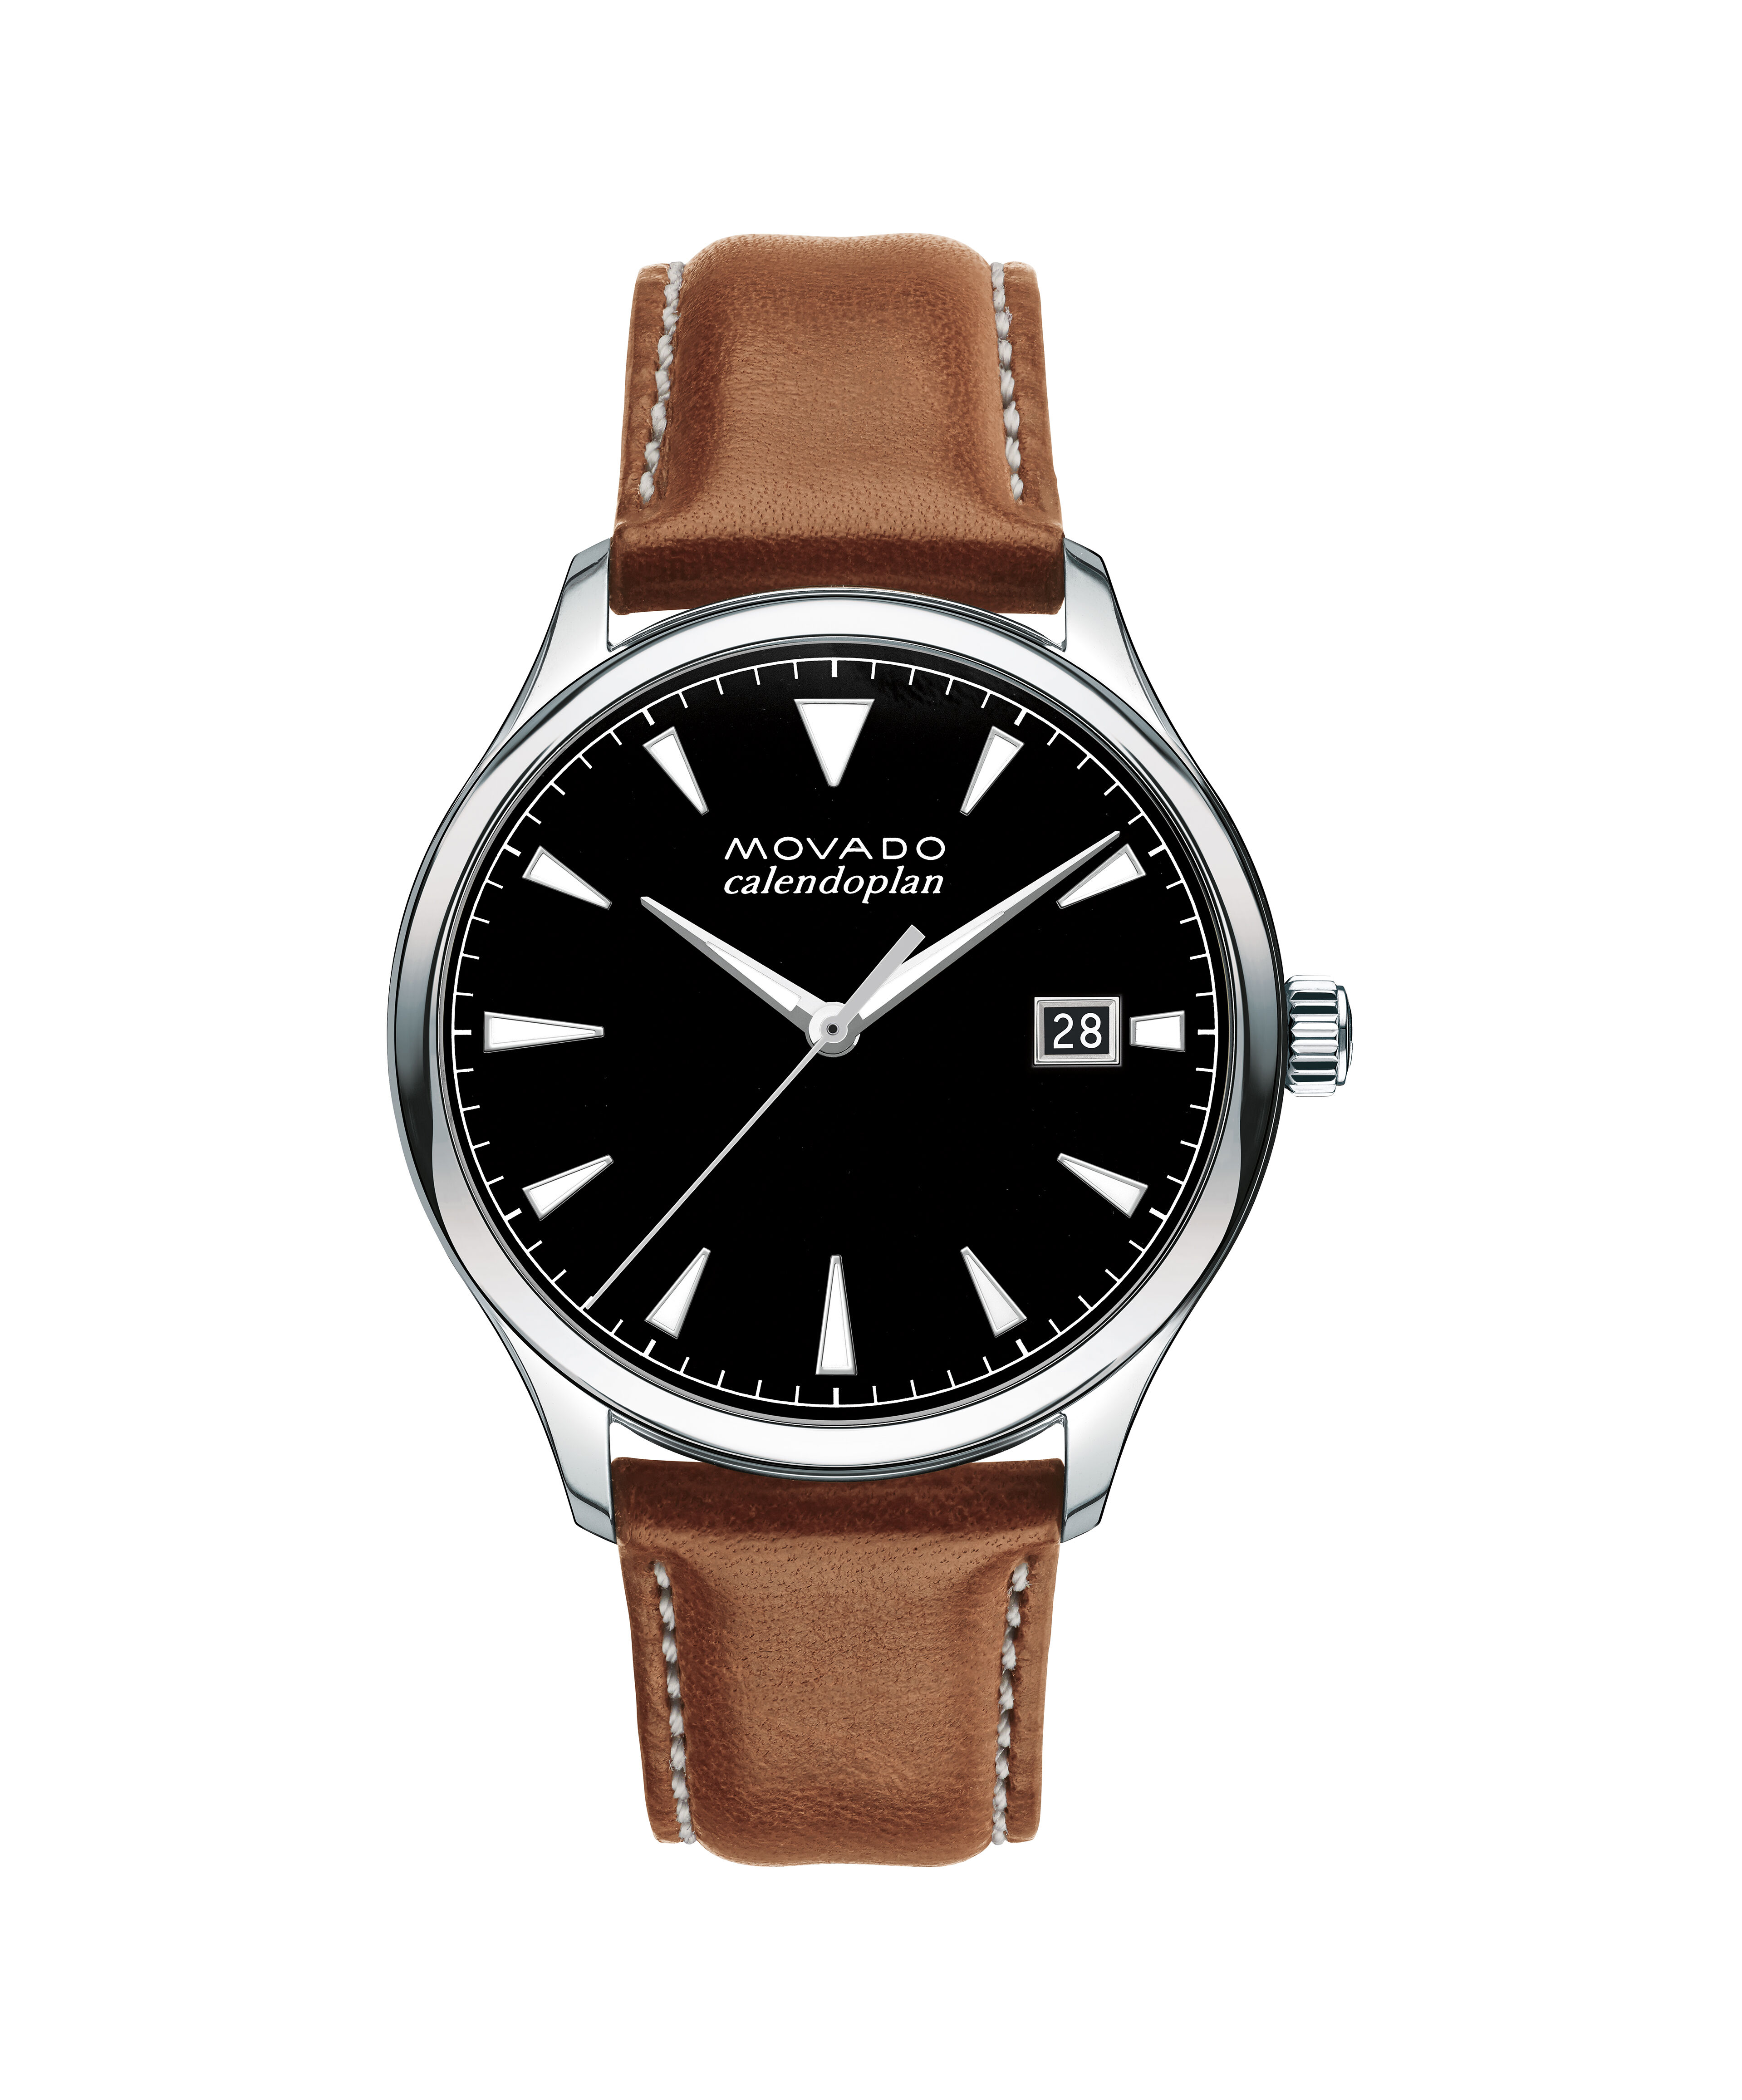 Cheap Rolex Replica Watch